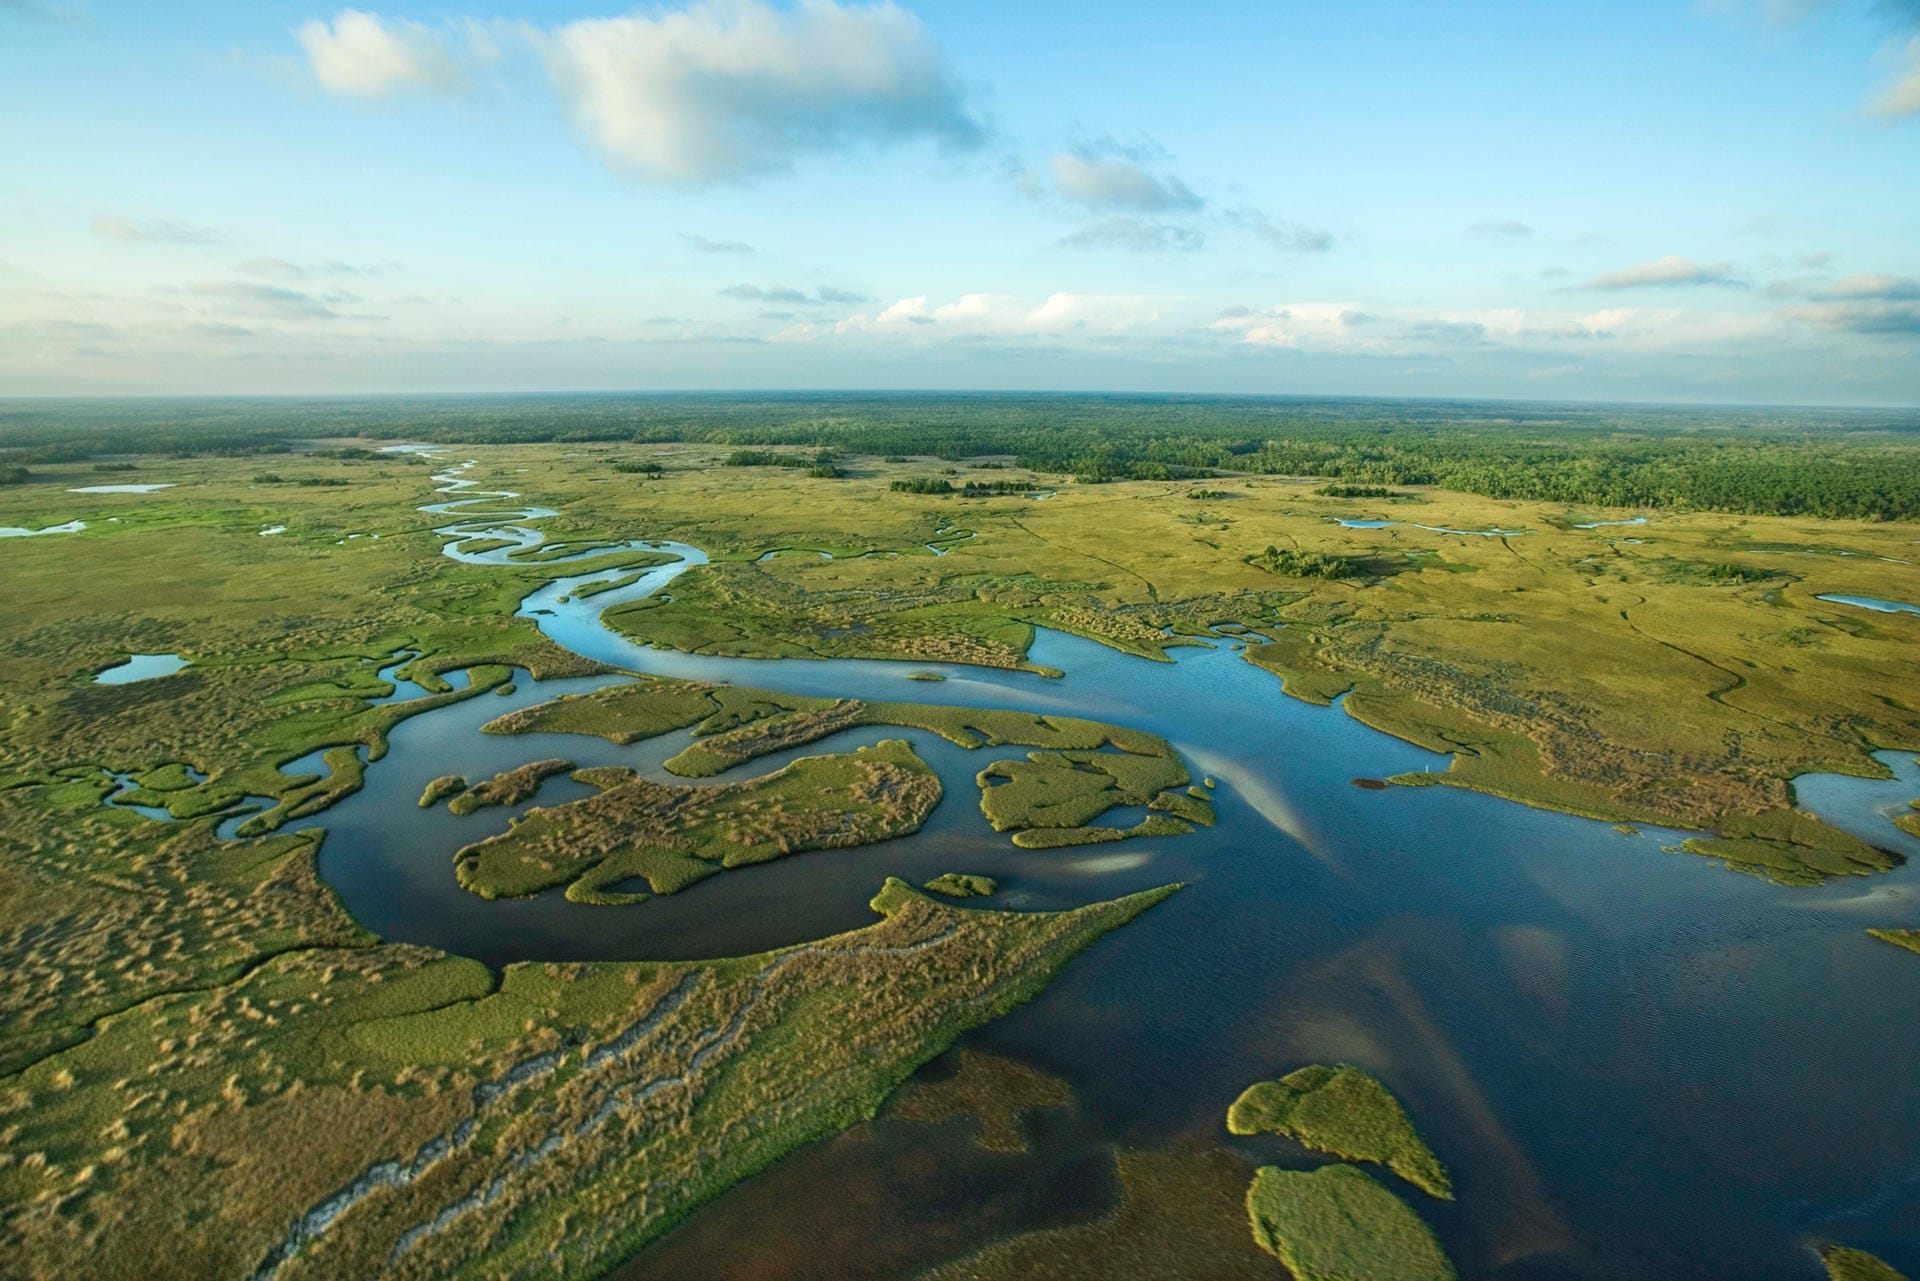 Everglades: An der Ostküste der USA liegt dieser subtropische Nationalpark. Die sumpfartige Landschaft beherbergt die einzigen wildlebenden Flamingos der USA und gehört zum UNESCO-Weltkulturerbe.